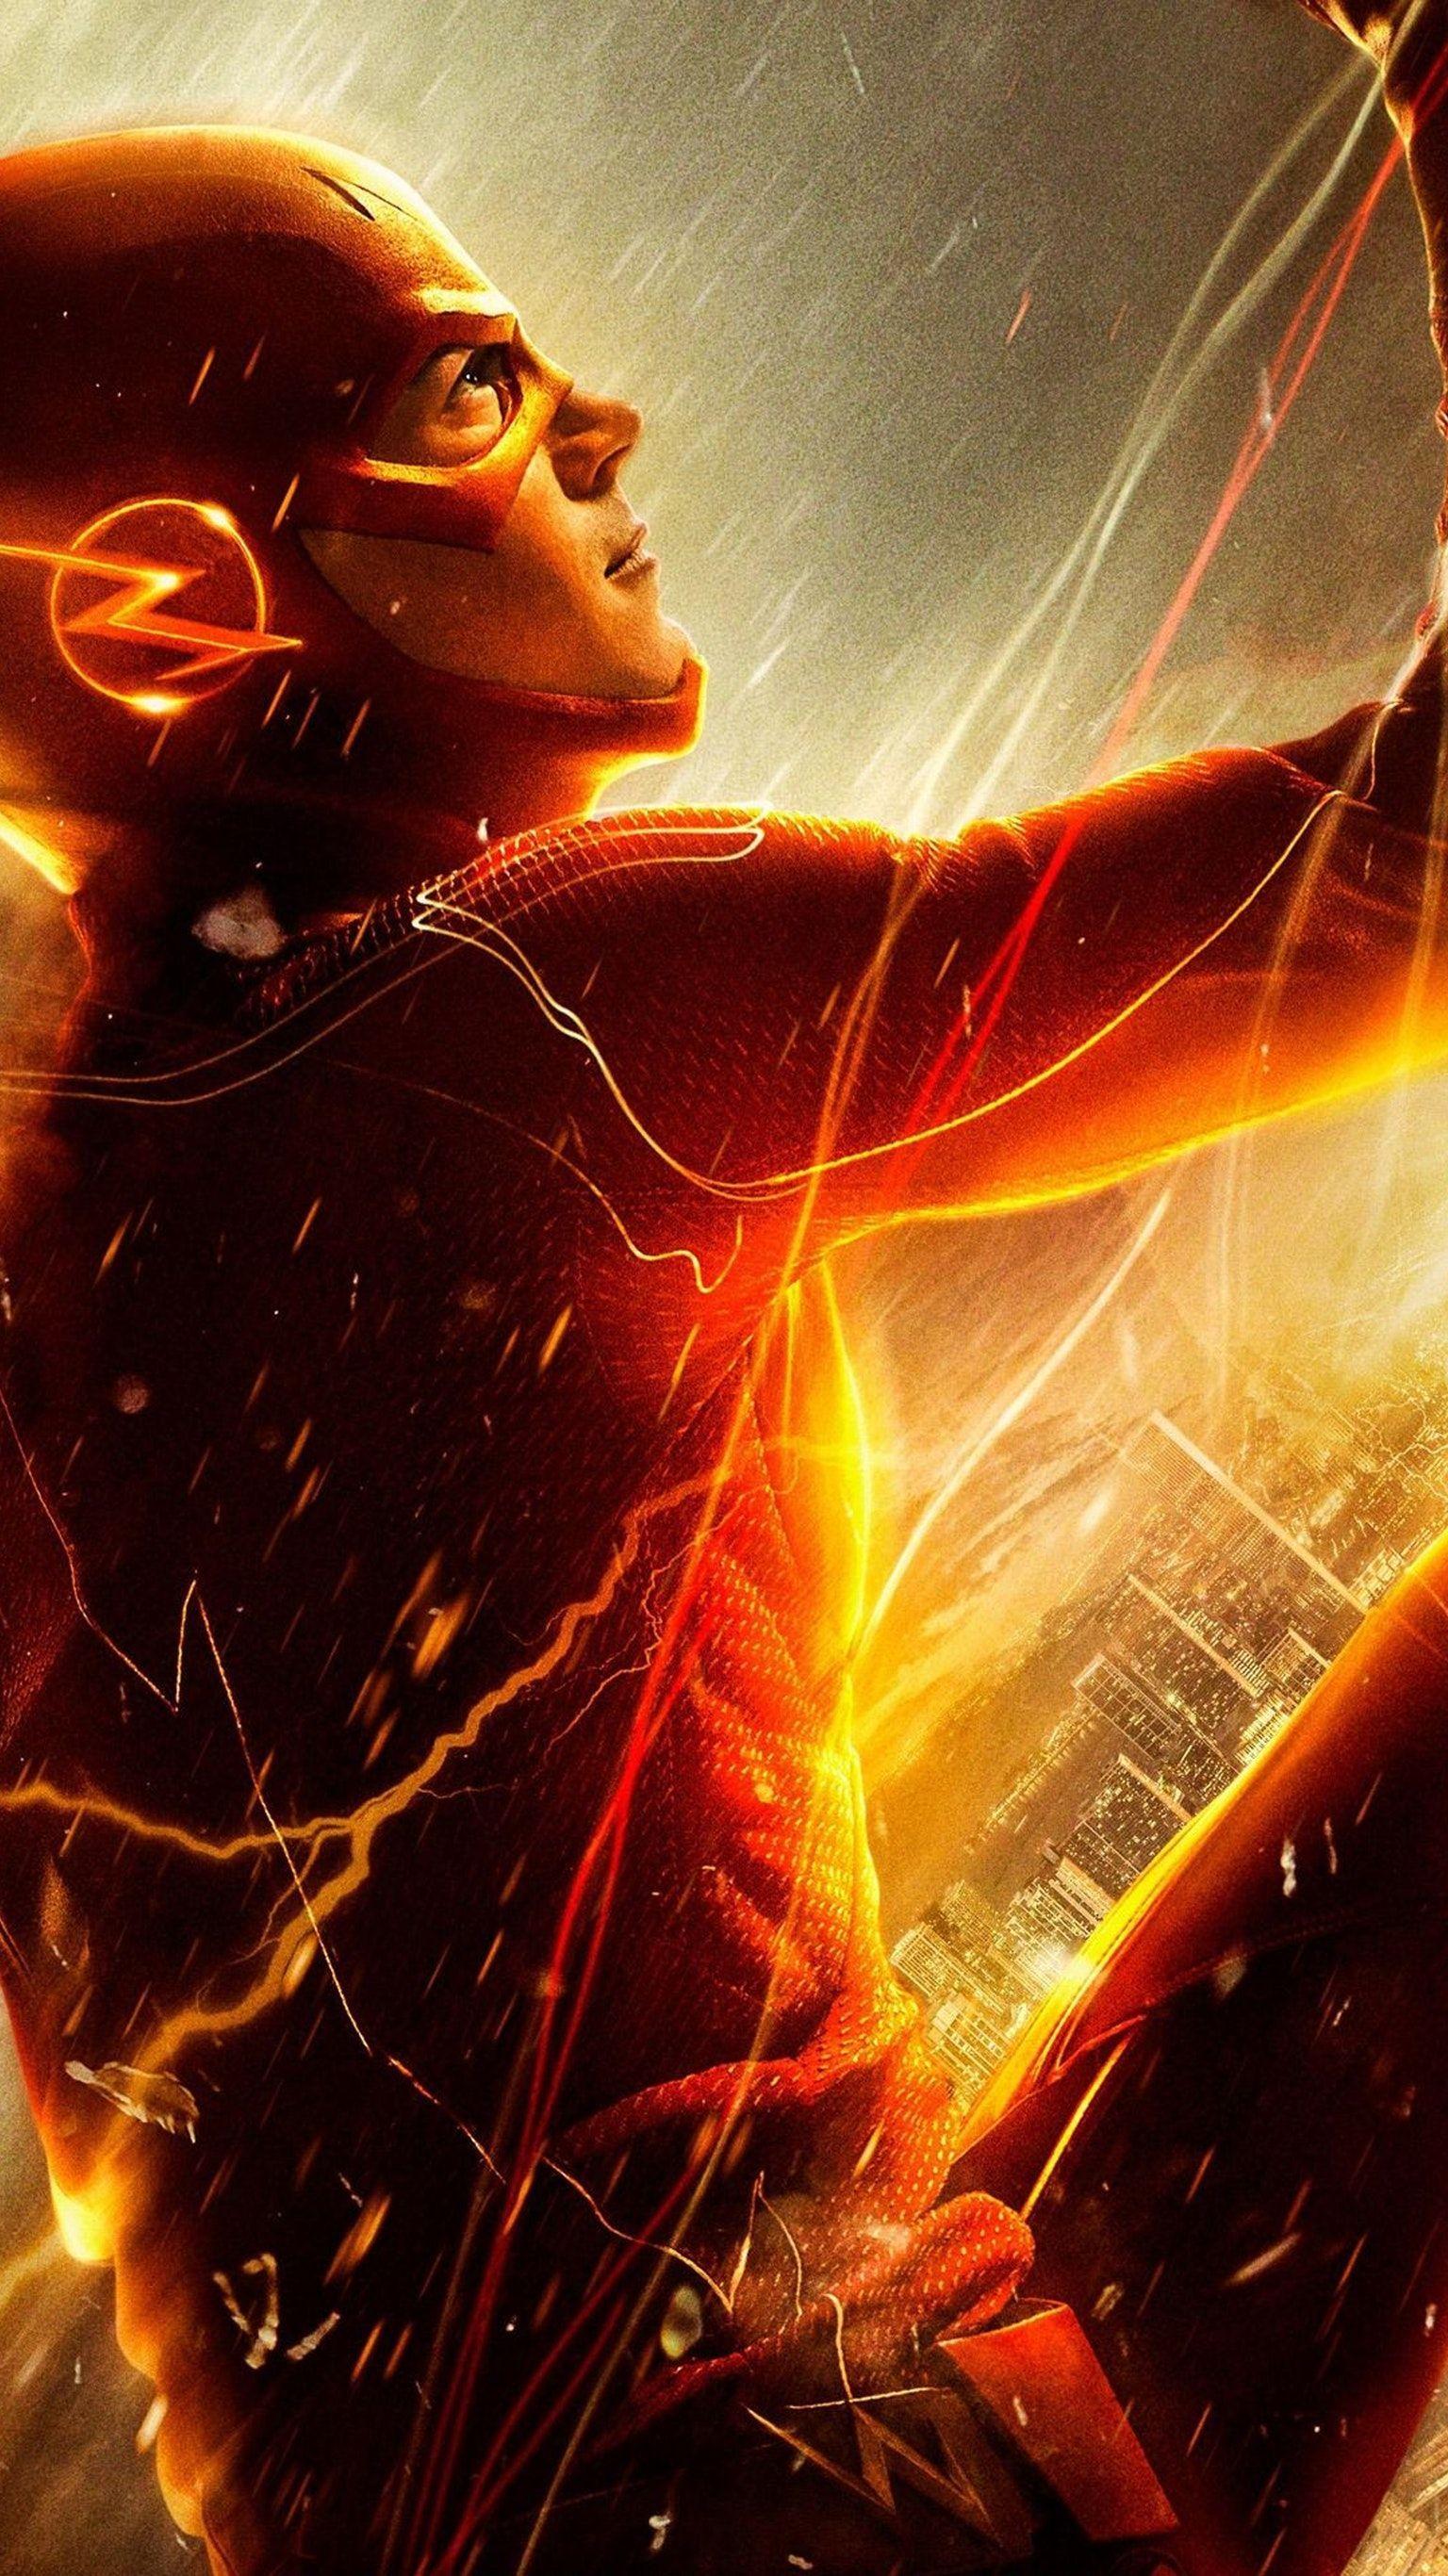 The Flash Phone Wallpaper. Moviemania. Imagenes de flash, Imágenes de superhéroes, Logo de flash